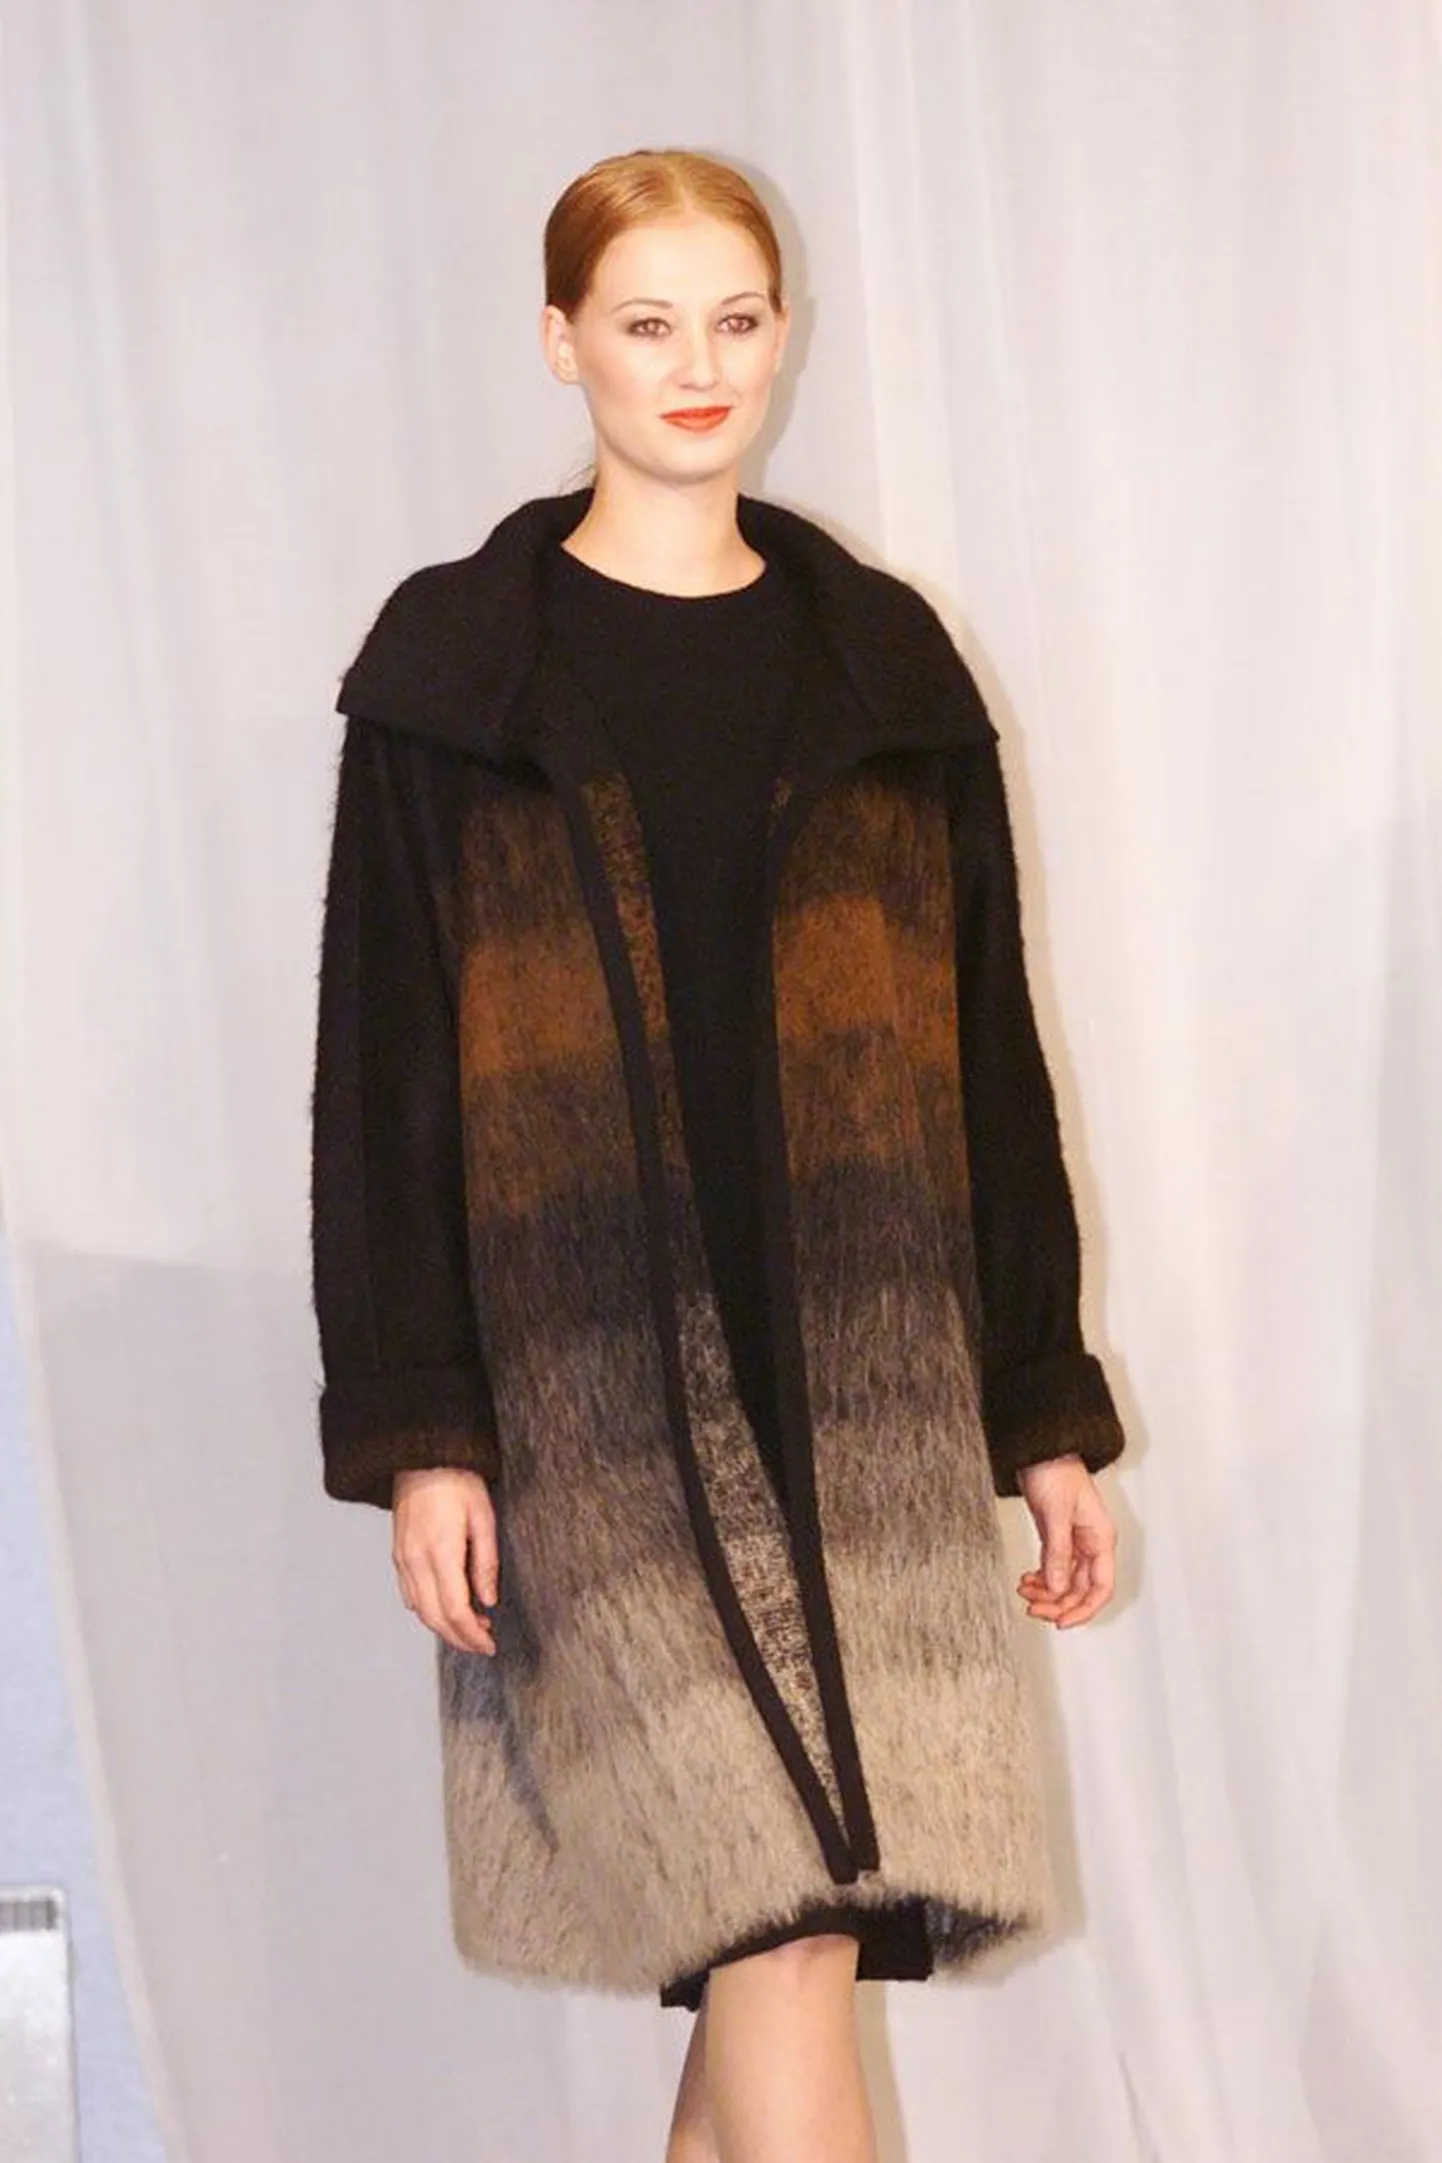 Moekunstnik Liivia Leškin esitleb trendituultele vastupidavate rõivaste rubriigis villase mantli ja jaki sümbioosi, mis passib nii õue kui ka tubastesse oludesse.